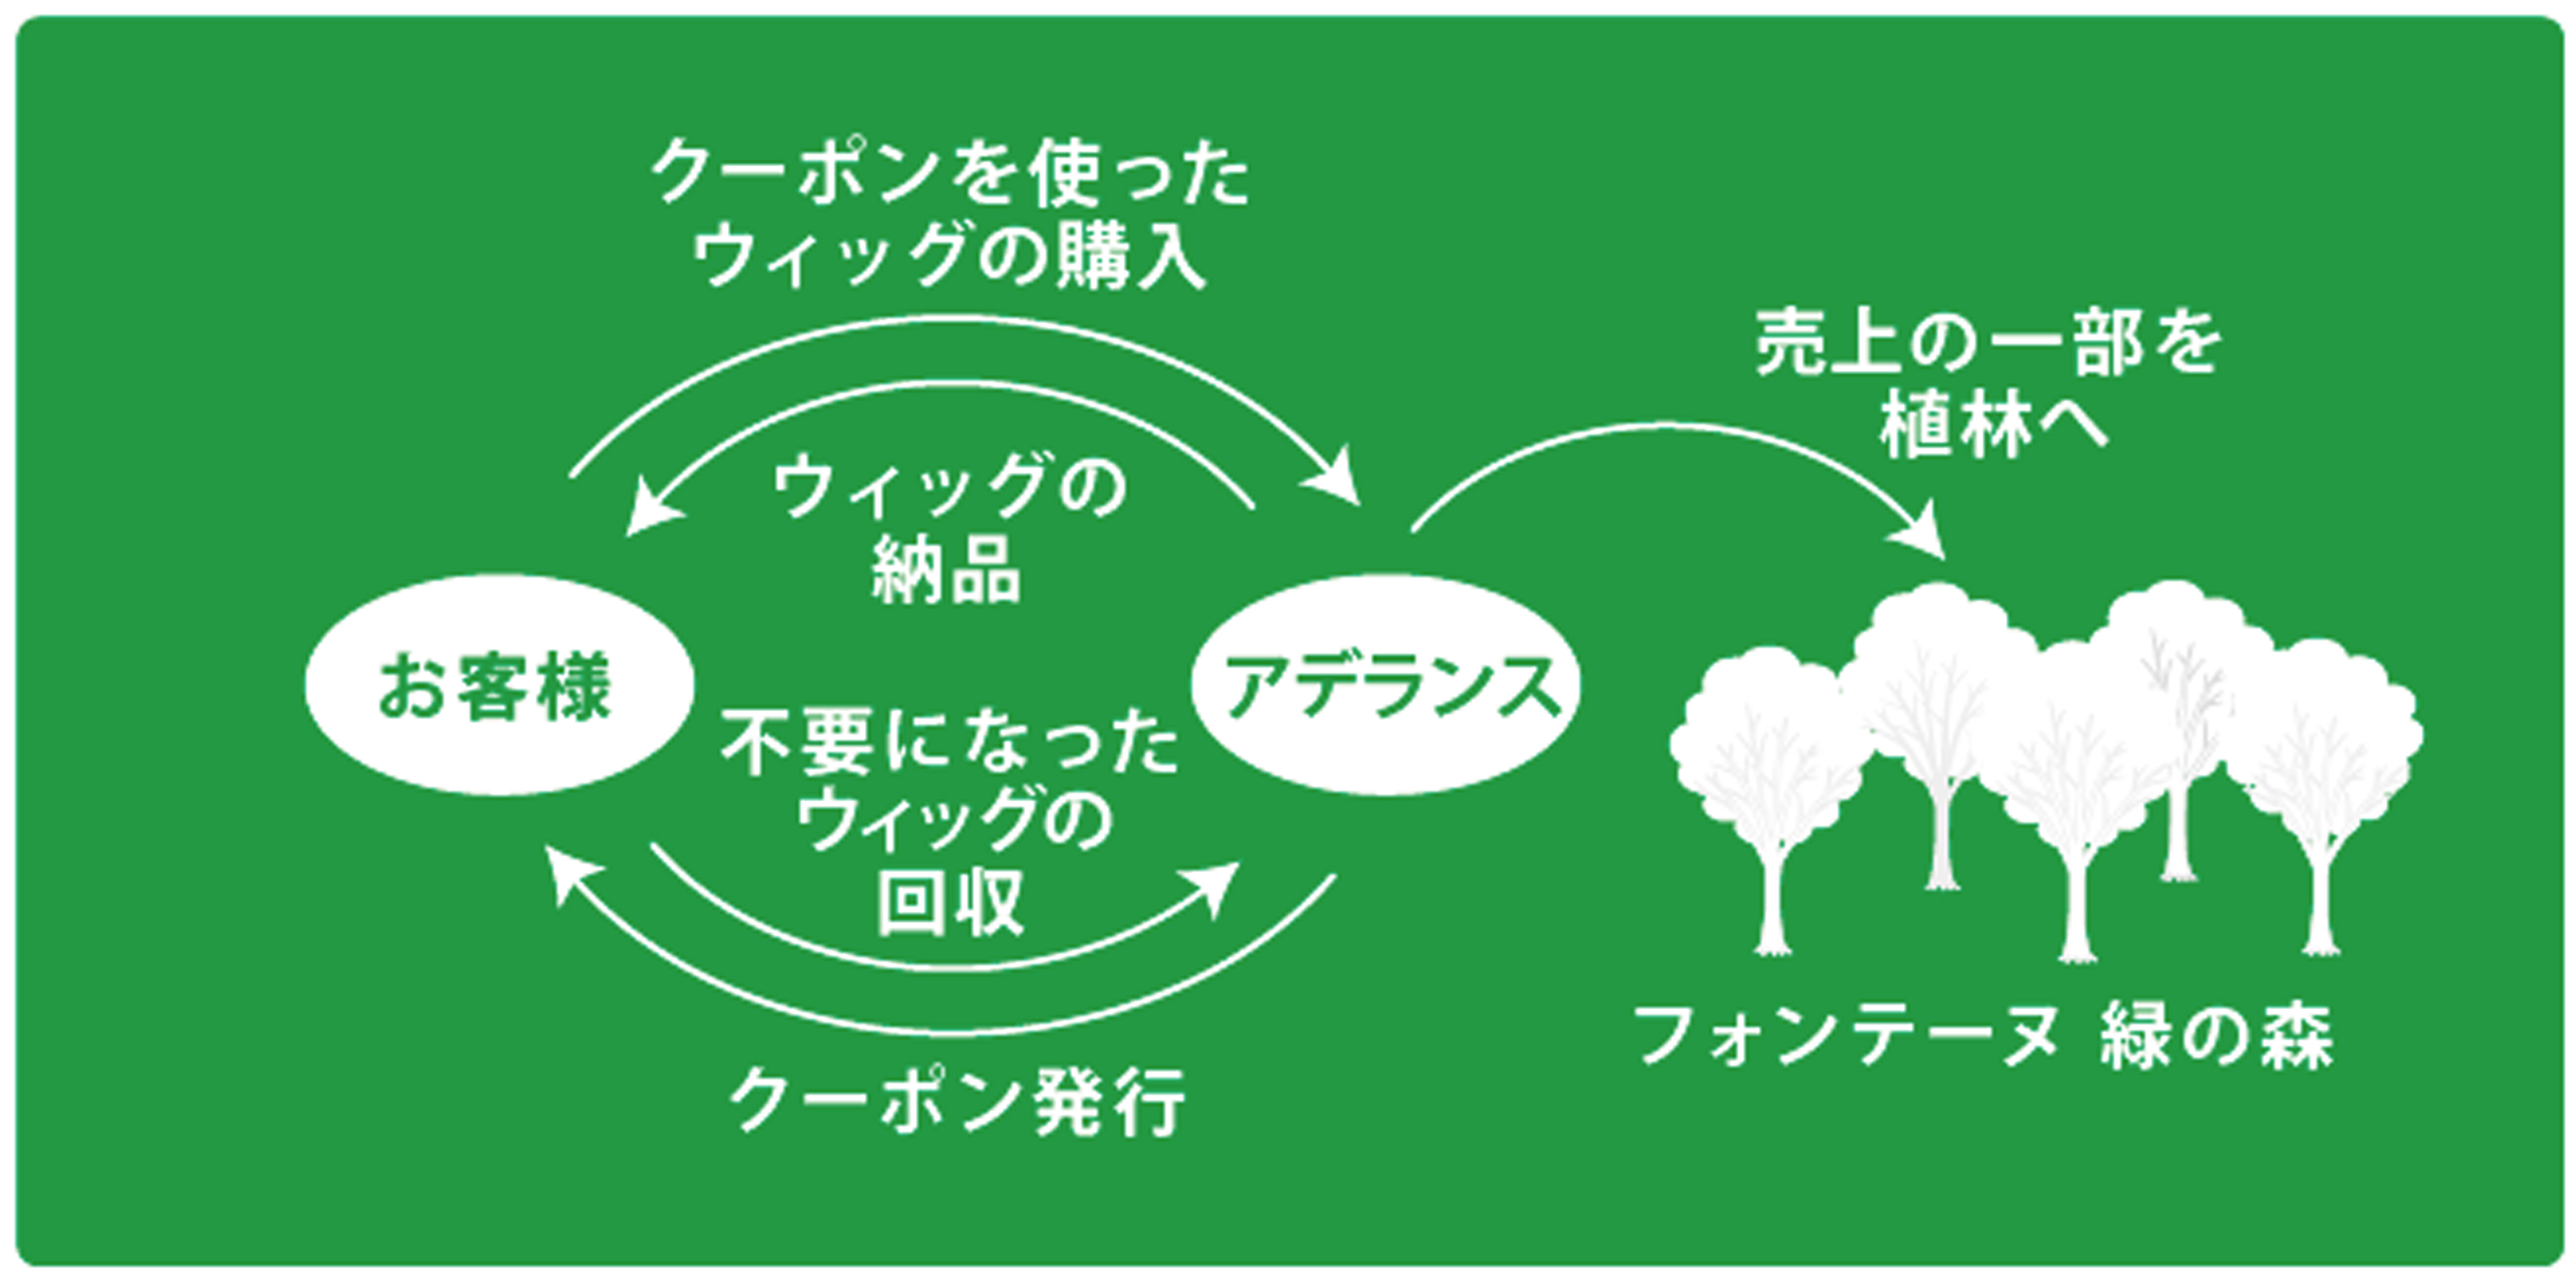 フォンテーヌ緑の森 キャンペーン スキーム図